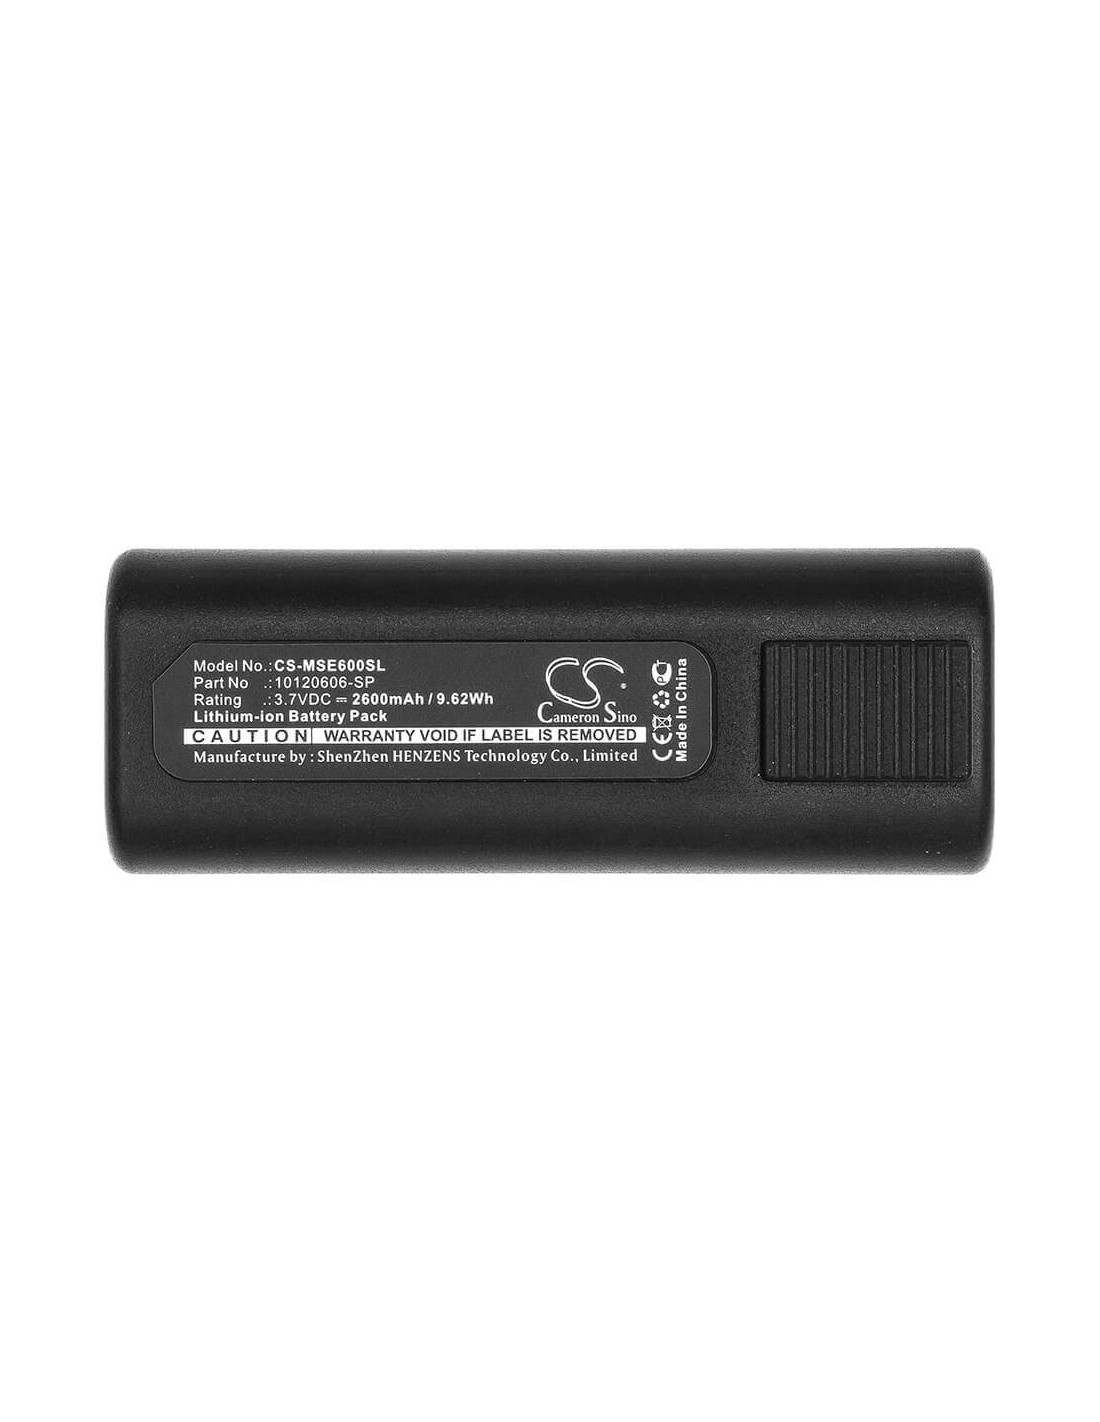 Battery for Msa, E6000 Tic 3.7V, 2600mAh - 9.62Wh